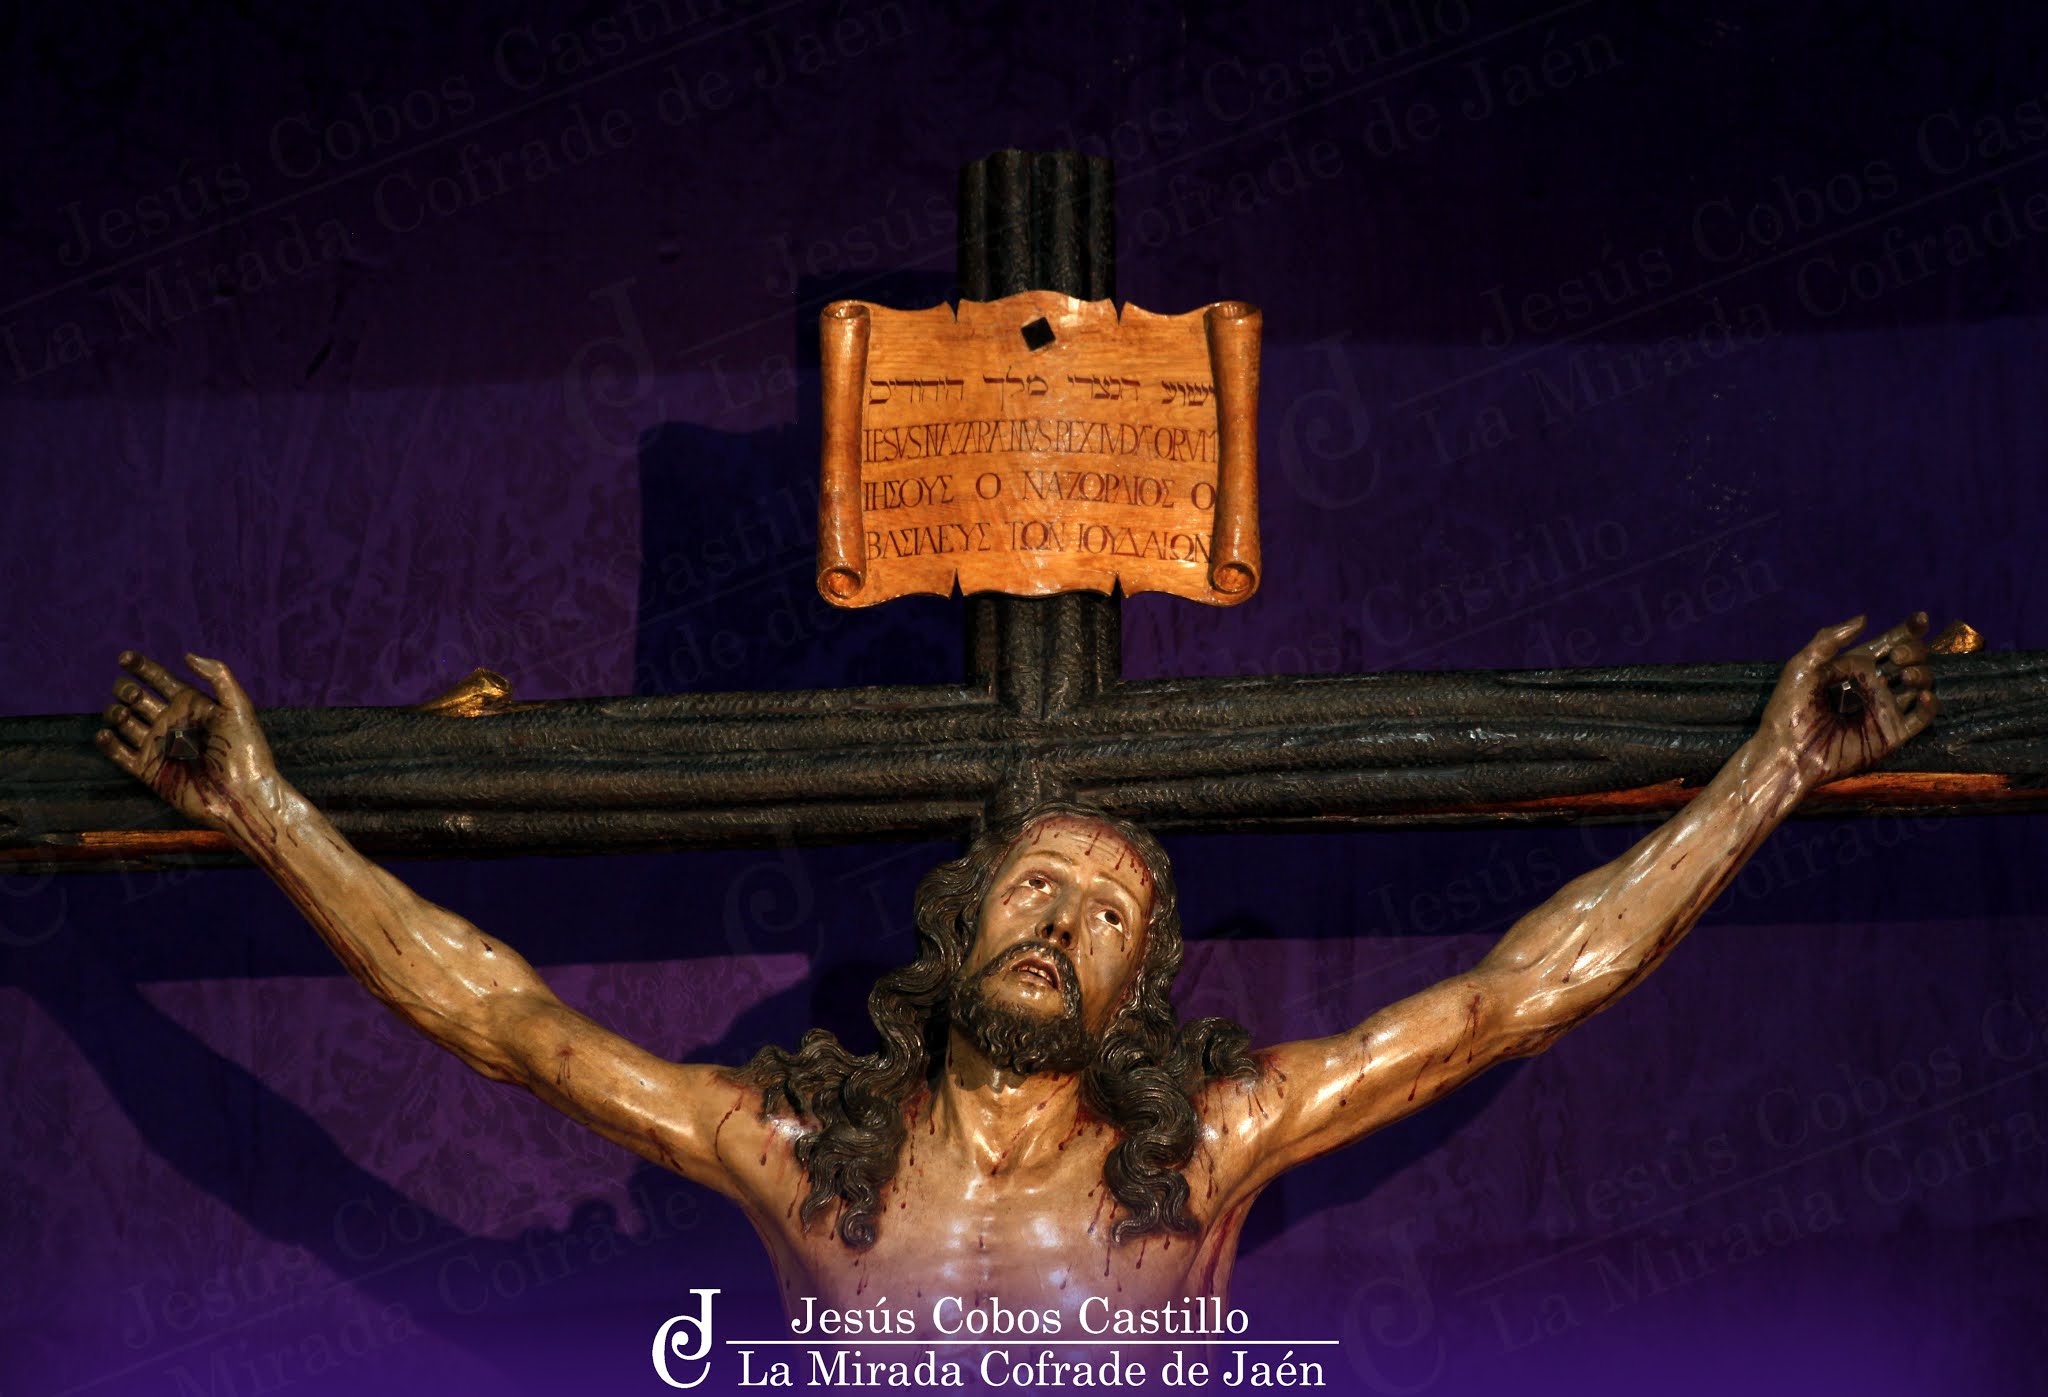 Recorrido del Traslado del Cristo de la Expiración a la Catedral de Jaén para participar en la Exposición "Misericordia Crucifixia"